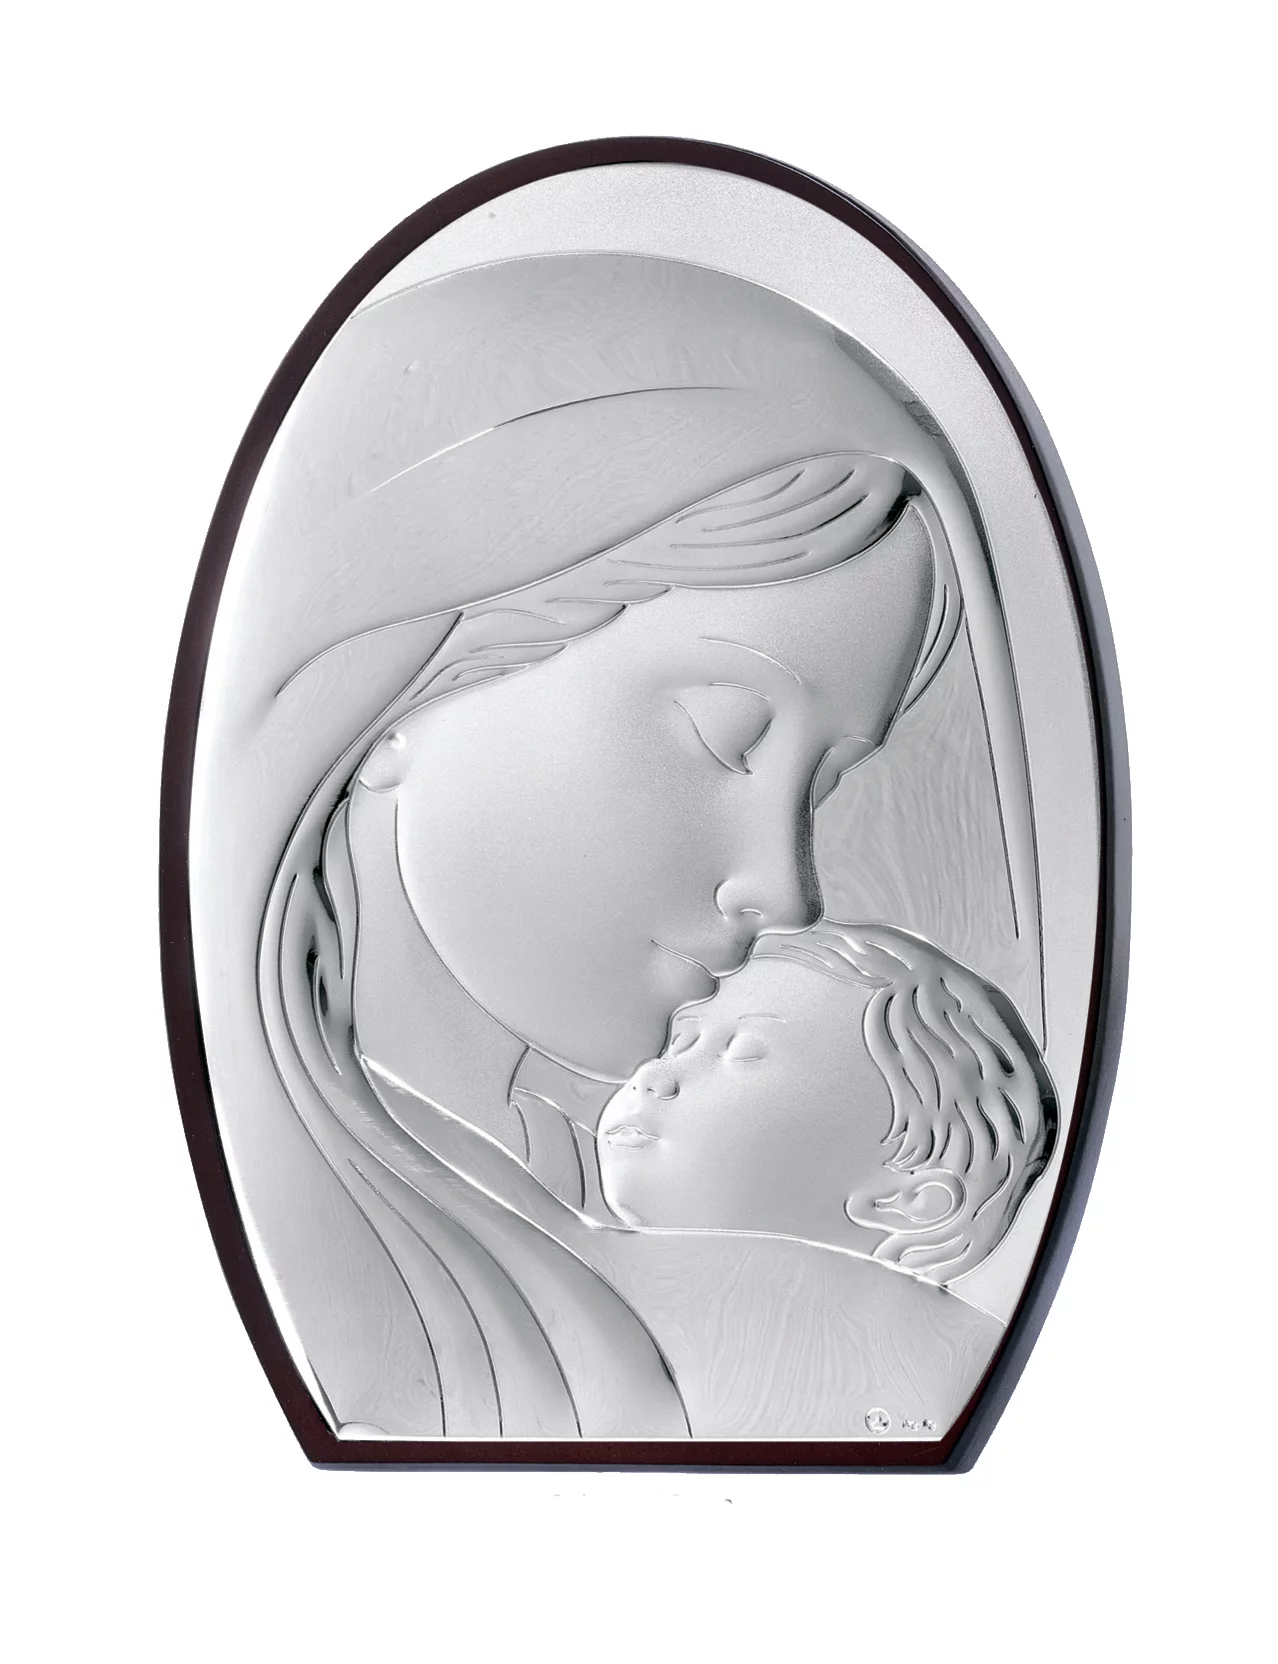 Икона "Божья Матерь с Младенцем" 8x11. Артикул MA/E902/4: цена, отзывы, фото – купить в интернет-магазине AURUM